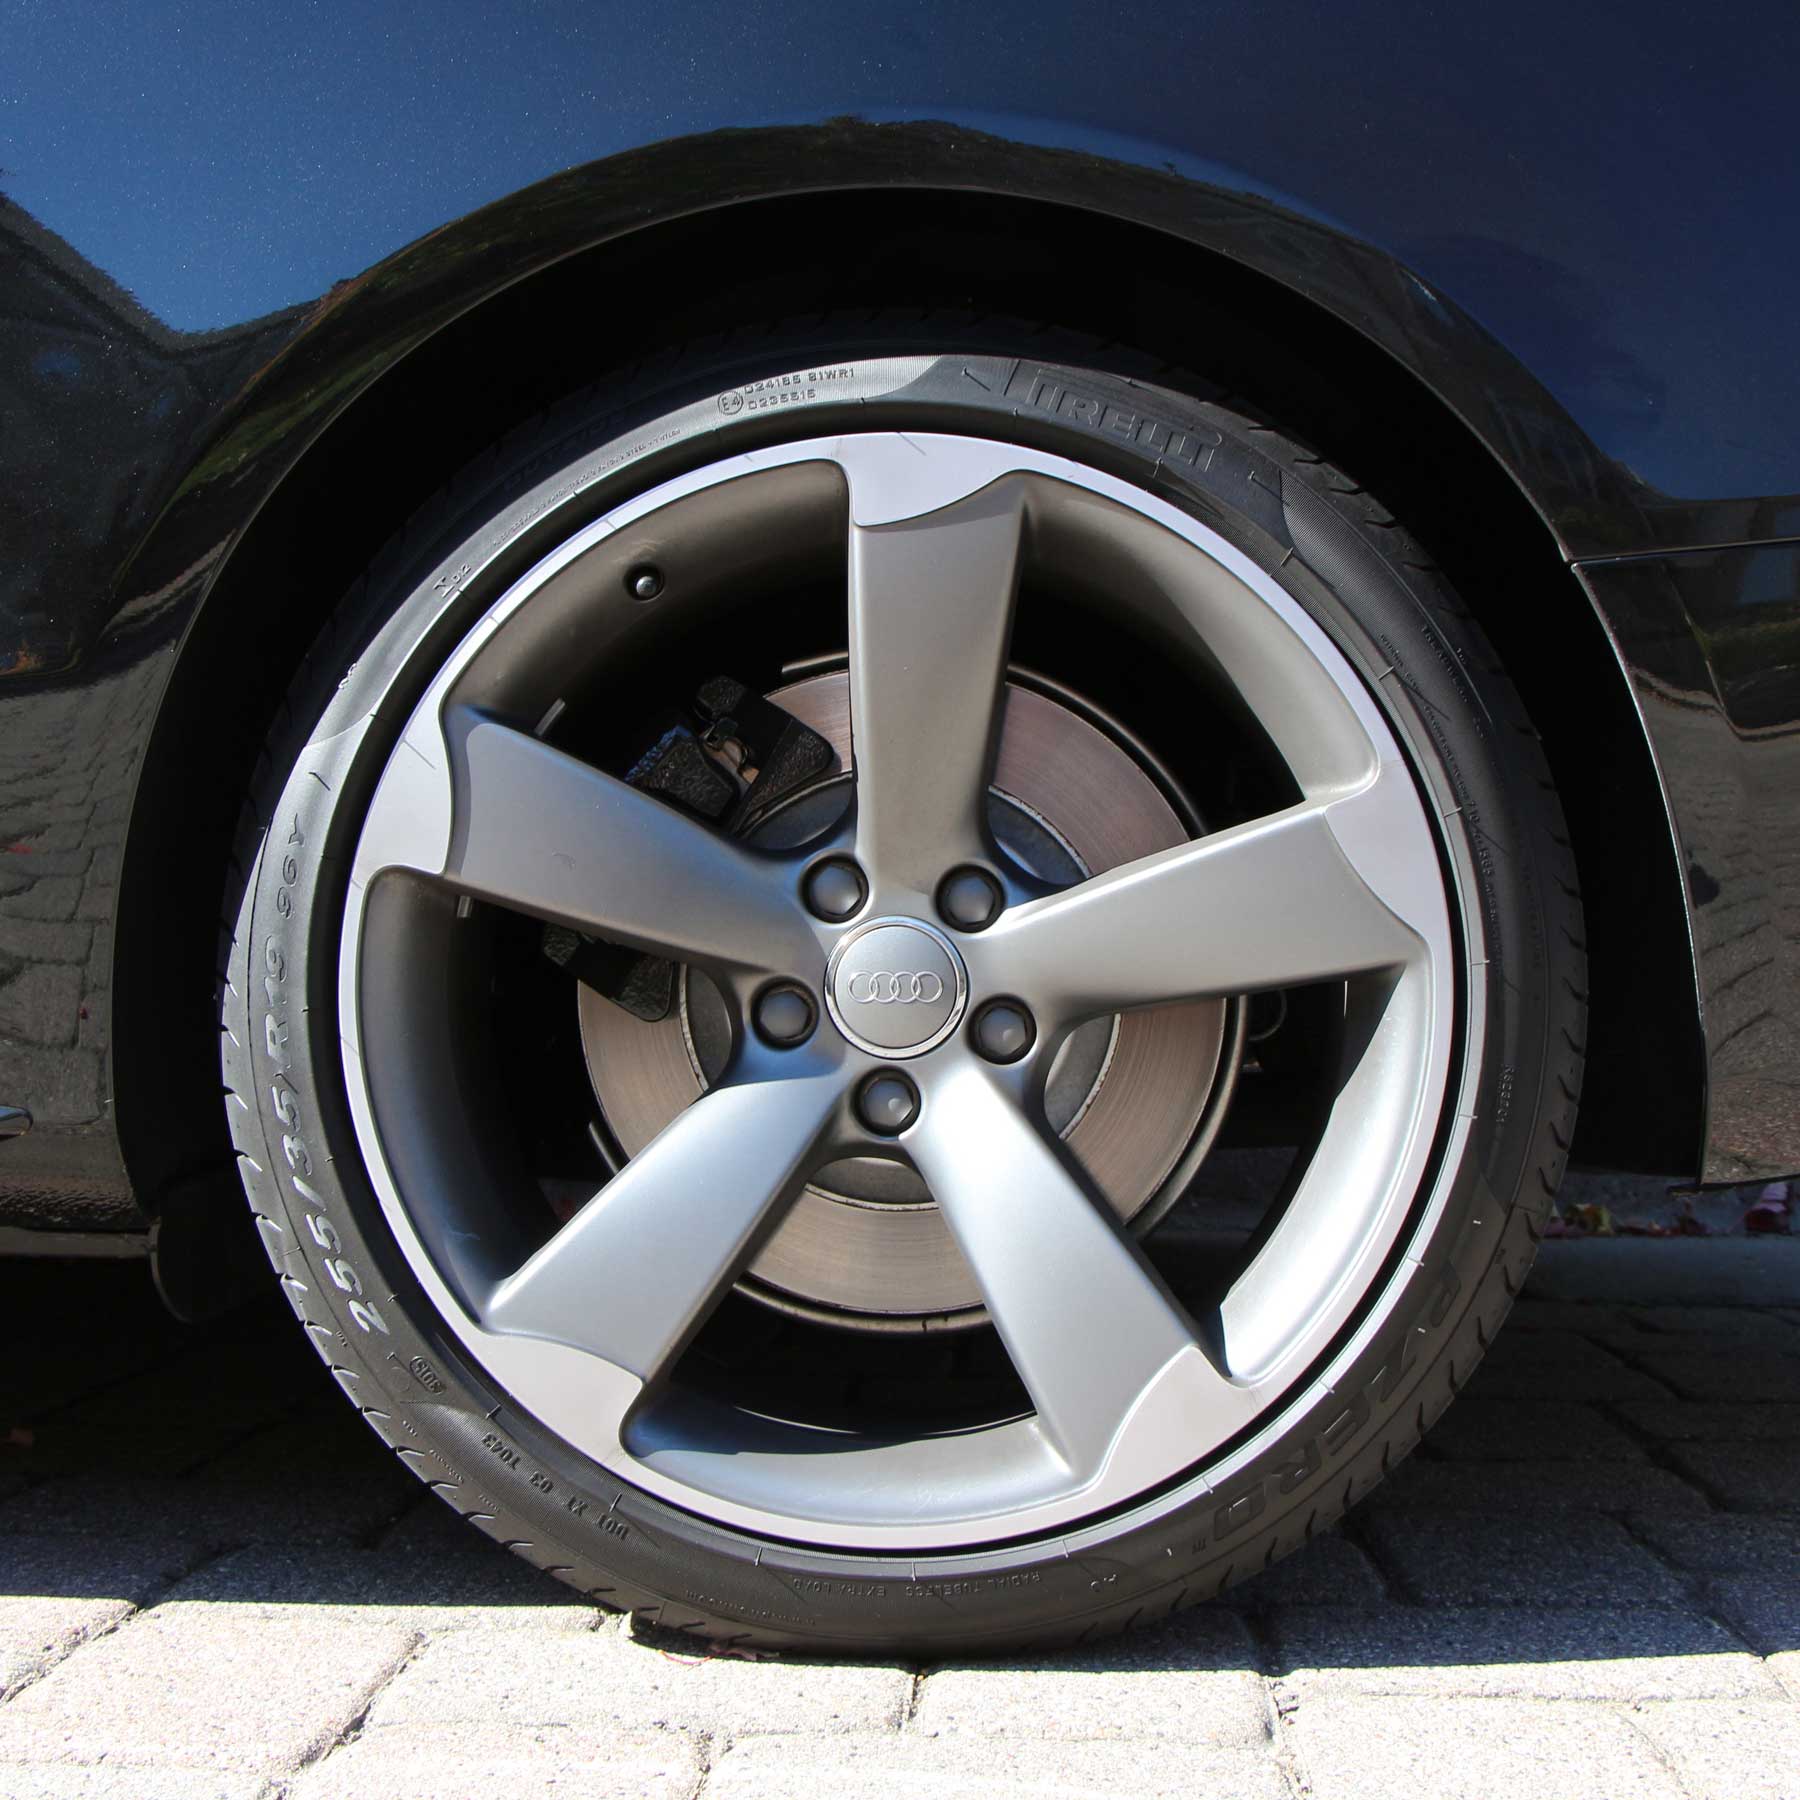 Audi S5 Pirelli Tires